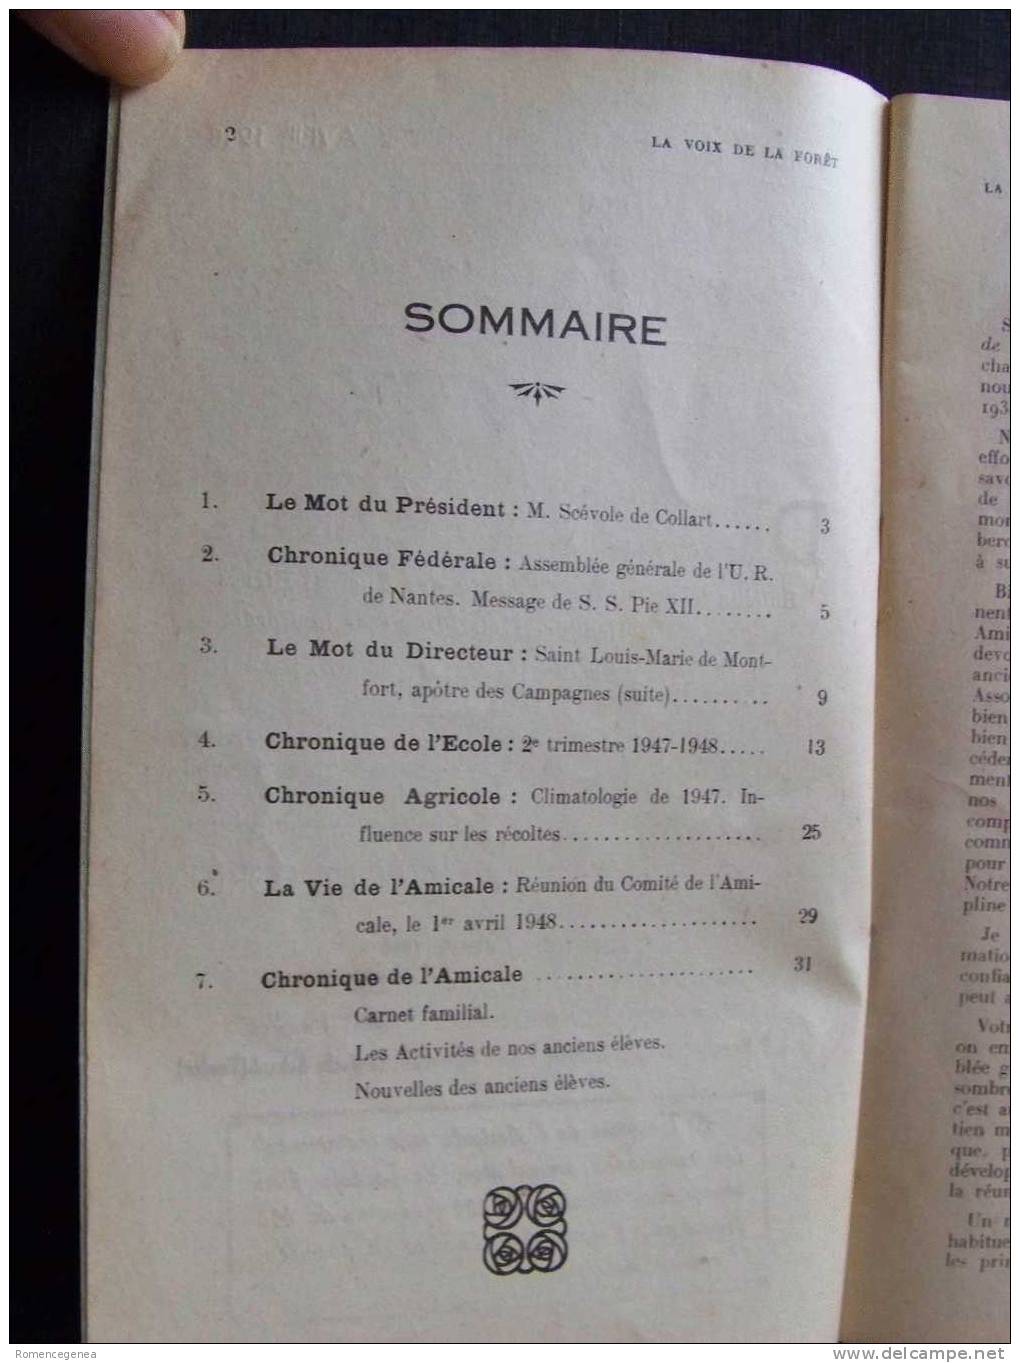 La MOTHE-ACHARD - Bulletin Trimestriel "LA VOIX DE LA FORÊT" - N°15 - Ecole D´Agriculture - Anciens Elèves - Avril 1948 - 1900 - 1949